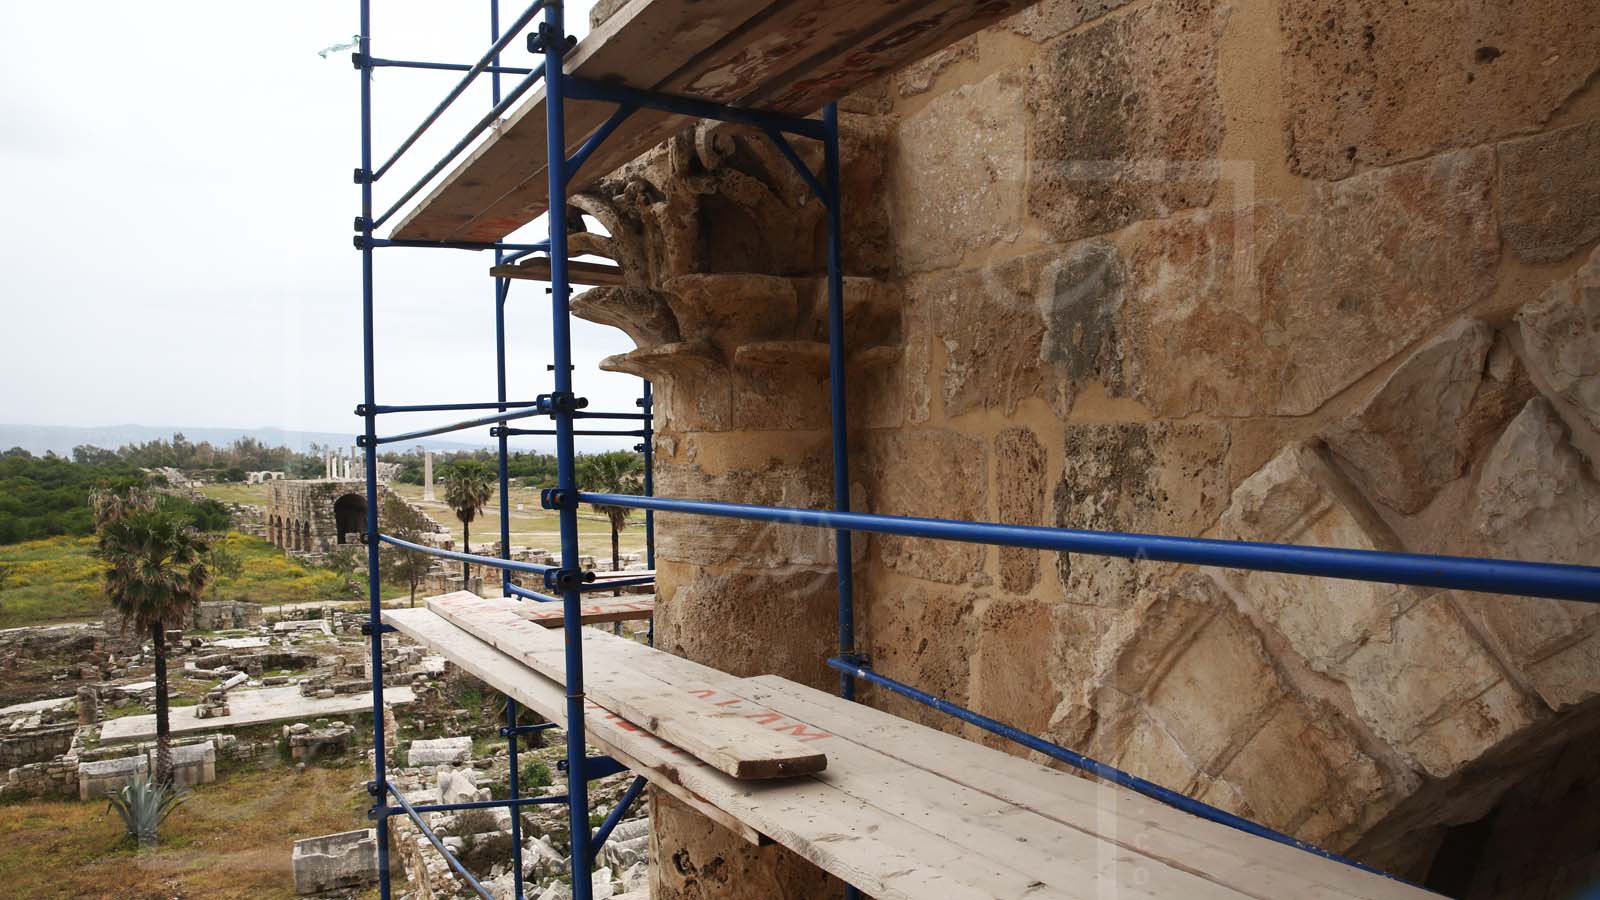 أعمال ترميم قوس النصر في مدخل المدينة الرومانية القديمة. ويظهر ميدان سباق الخيل خلفه (علي علوش)